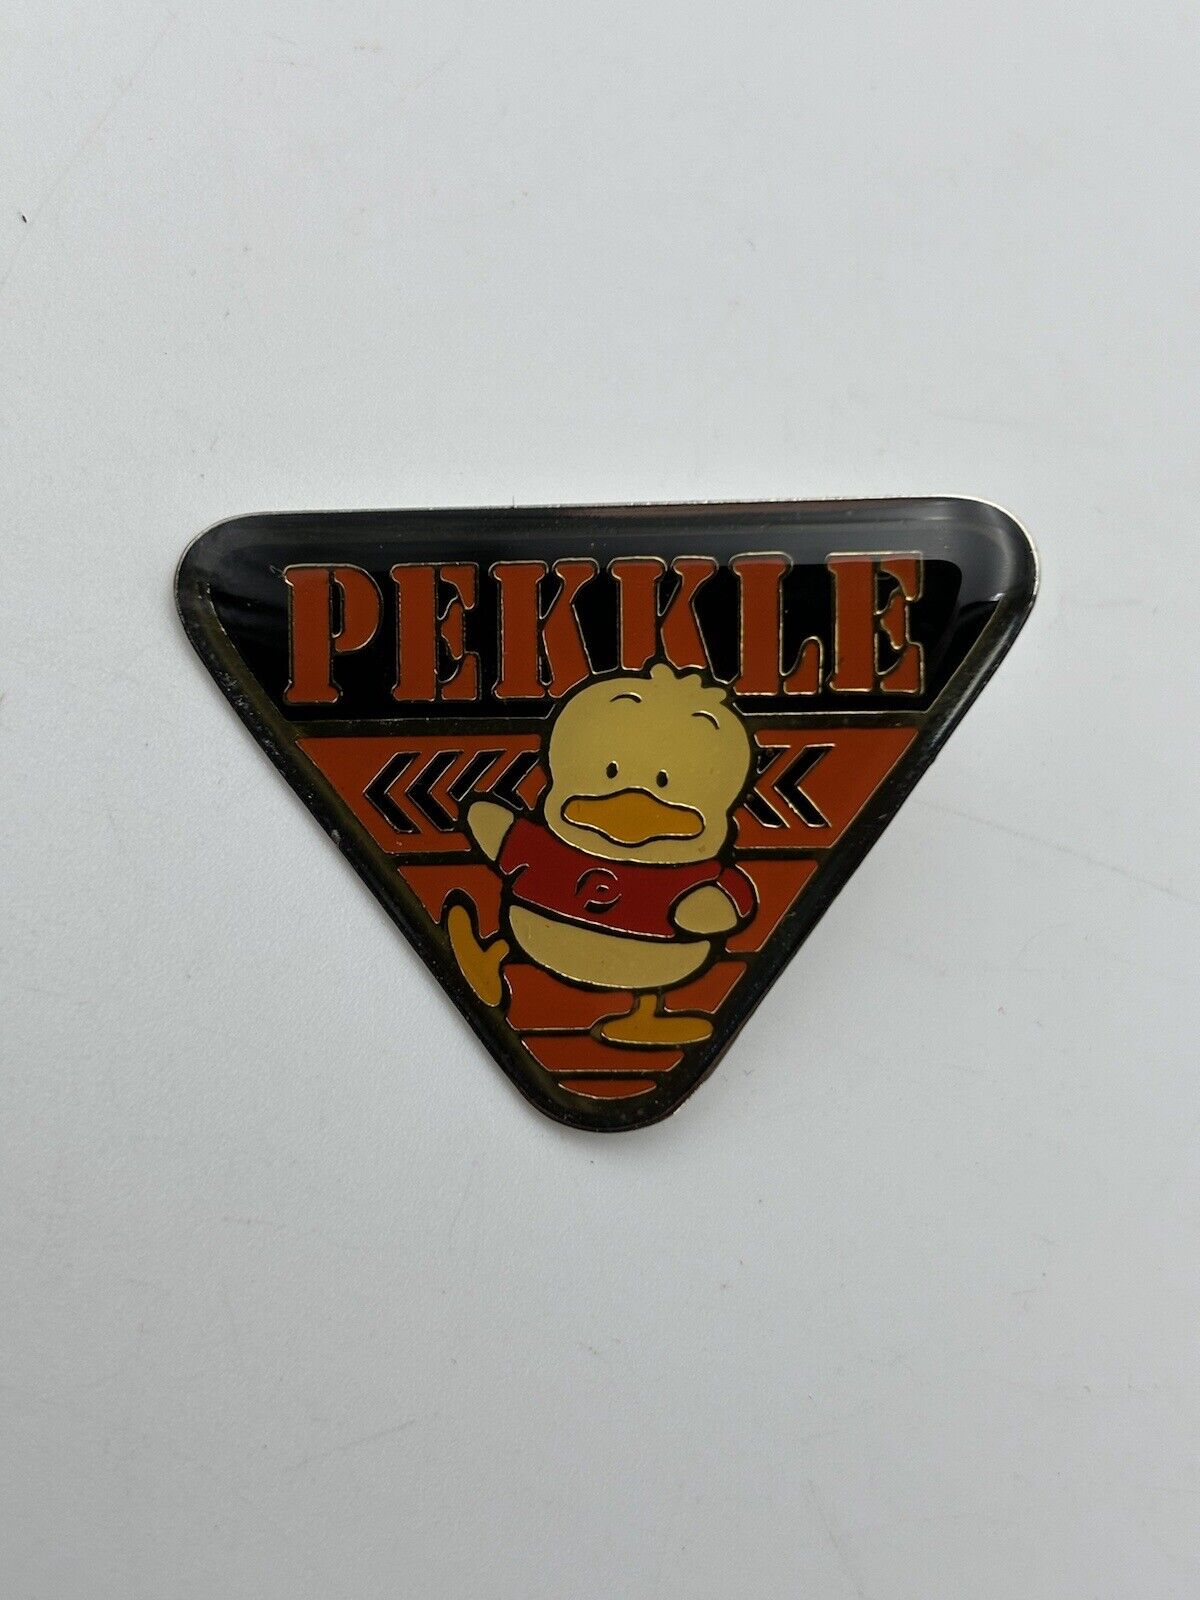 1990s Vintage Sanrio Pekkle Duck Metal Pin